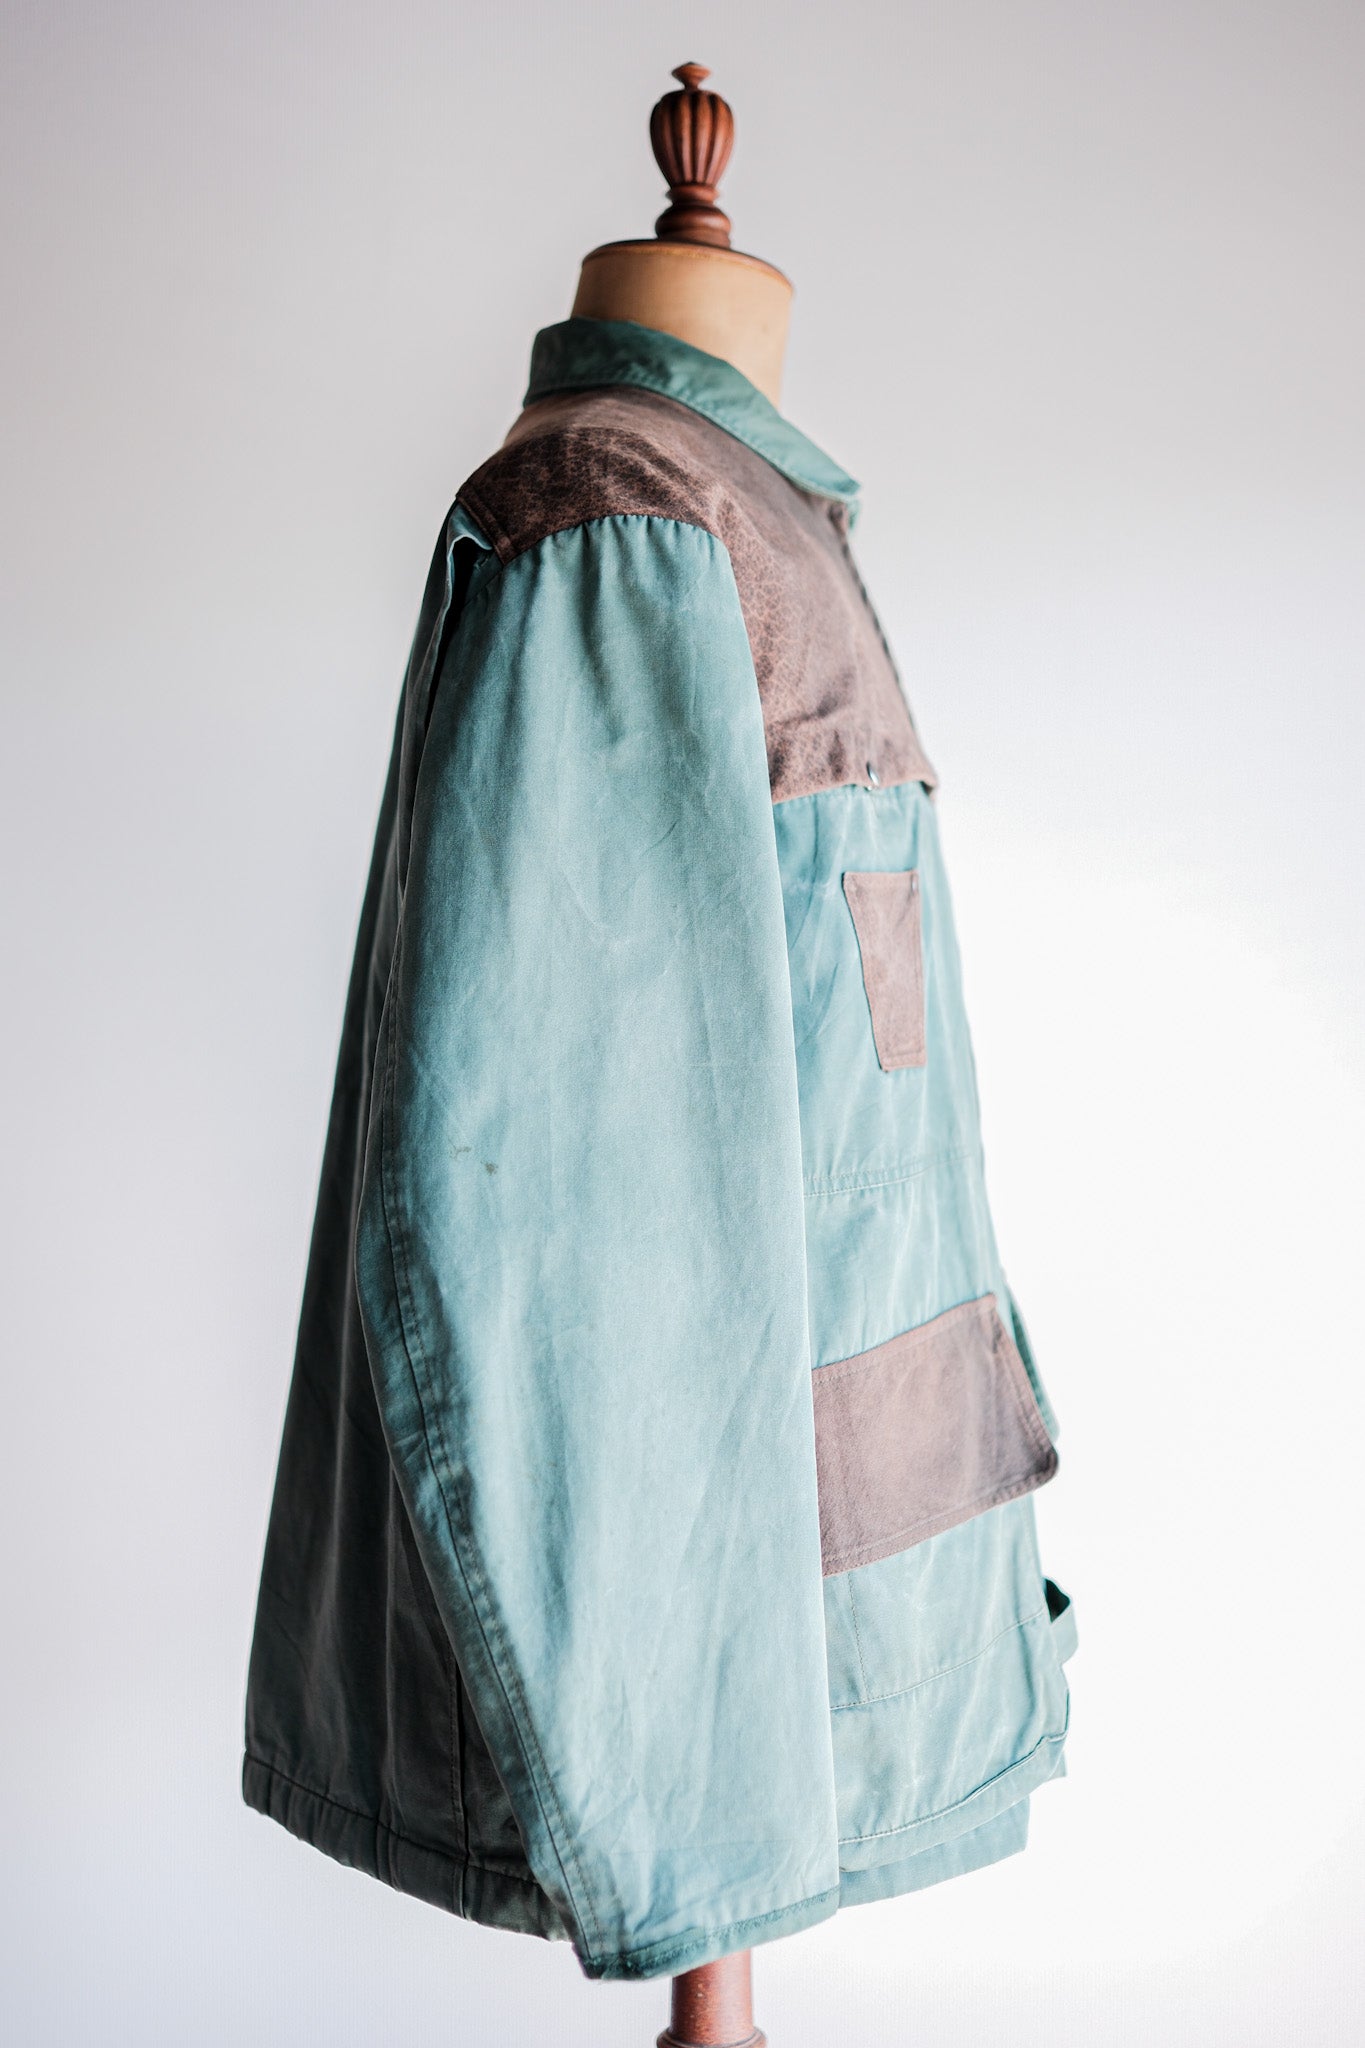 [〜60年代]法國復古狩獵和釣魚棉夾克尺寸。52“ l'Esquimau”